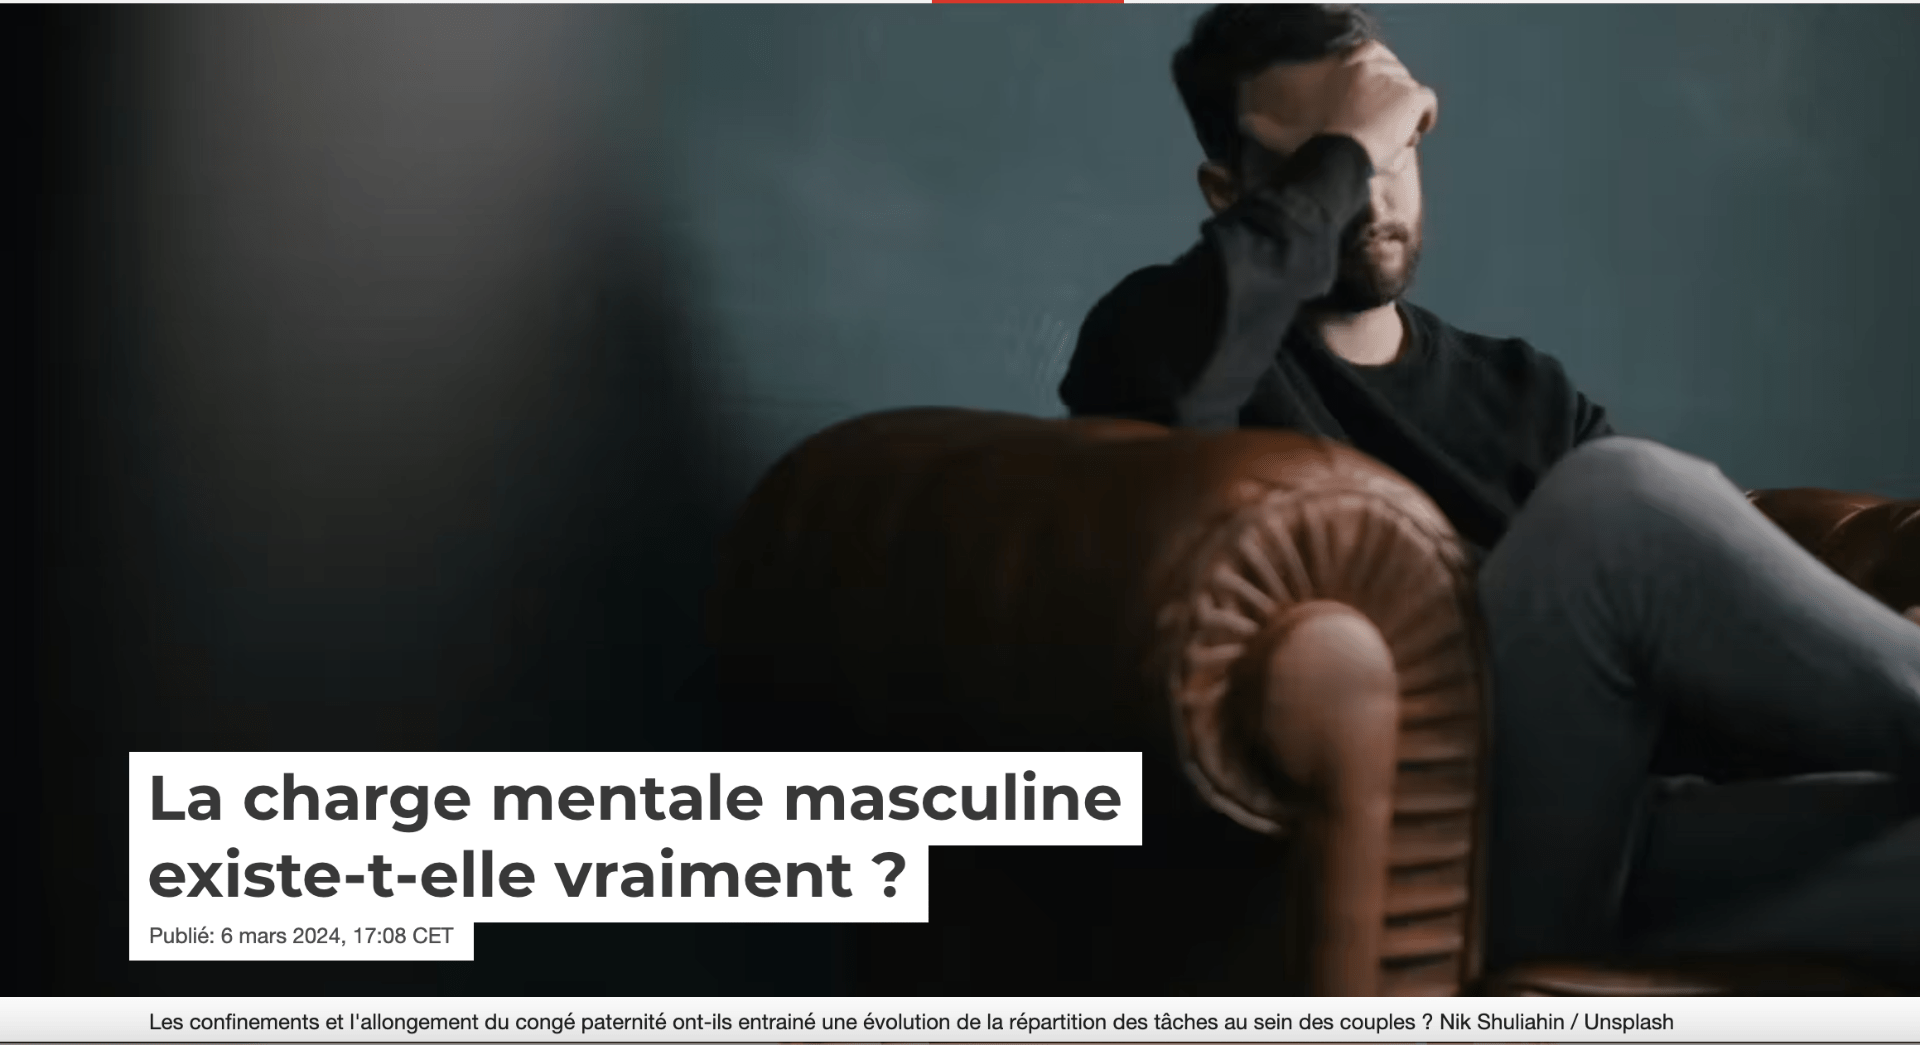 La charge mentale masculine existe-t-elle vraiment ?<br />
